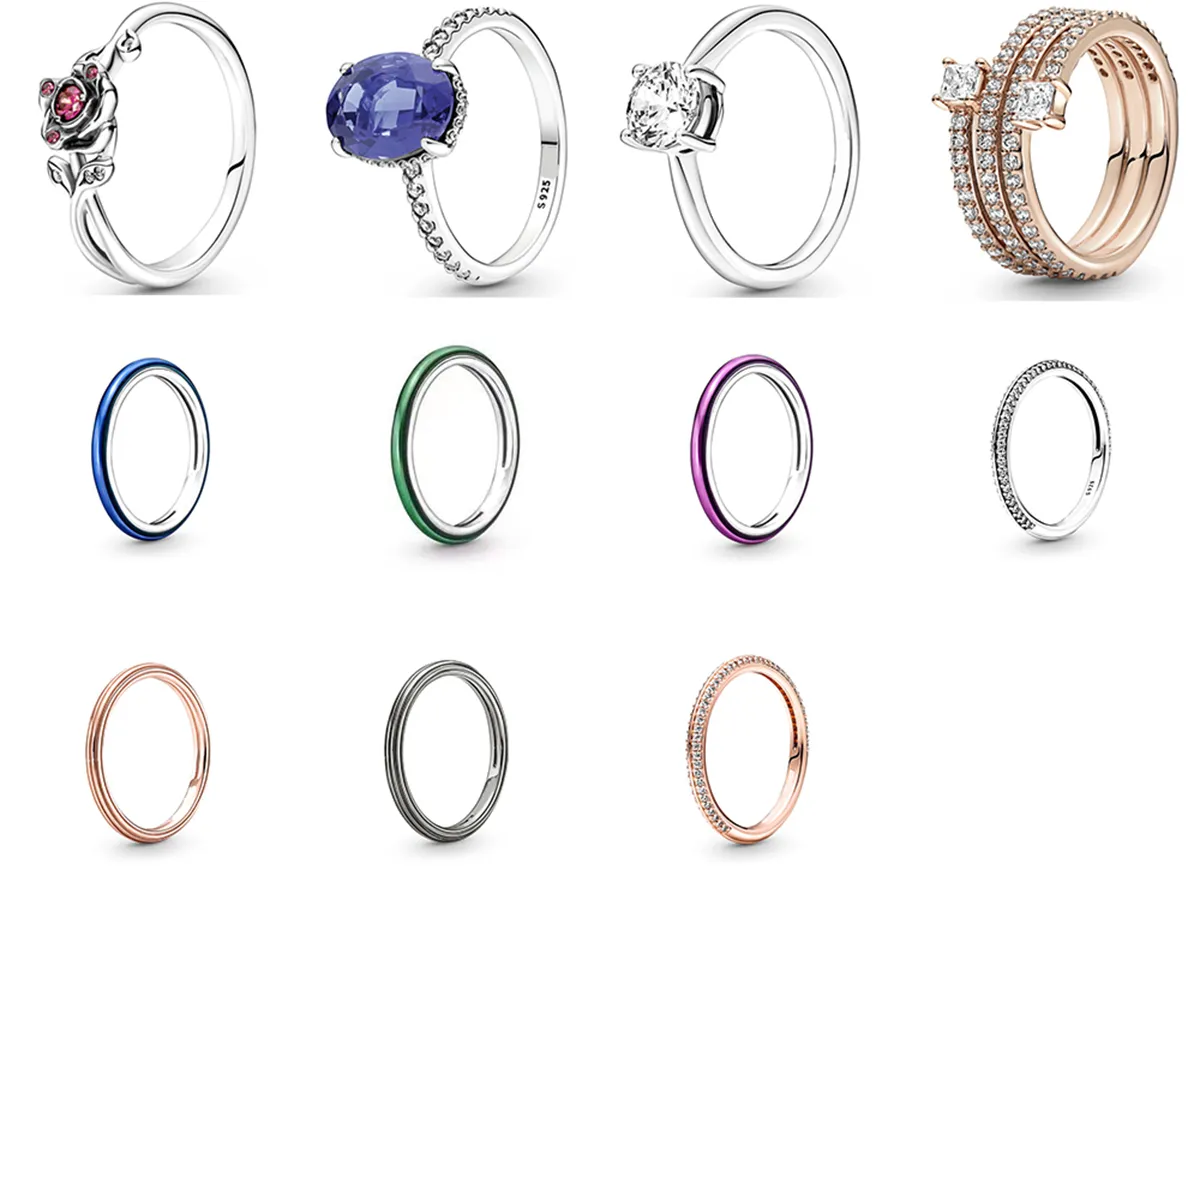 NUOVO 2021 100% 925 sterling con pietre laterali argento anello rotondo adatto fai da te braccialetto originale bracciale gioielli fshion regalo2